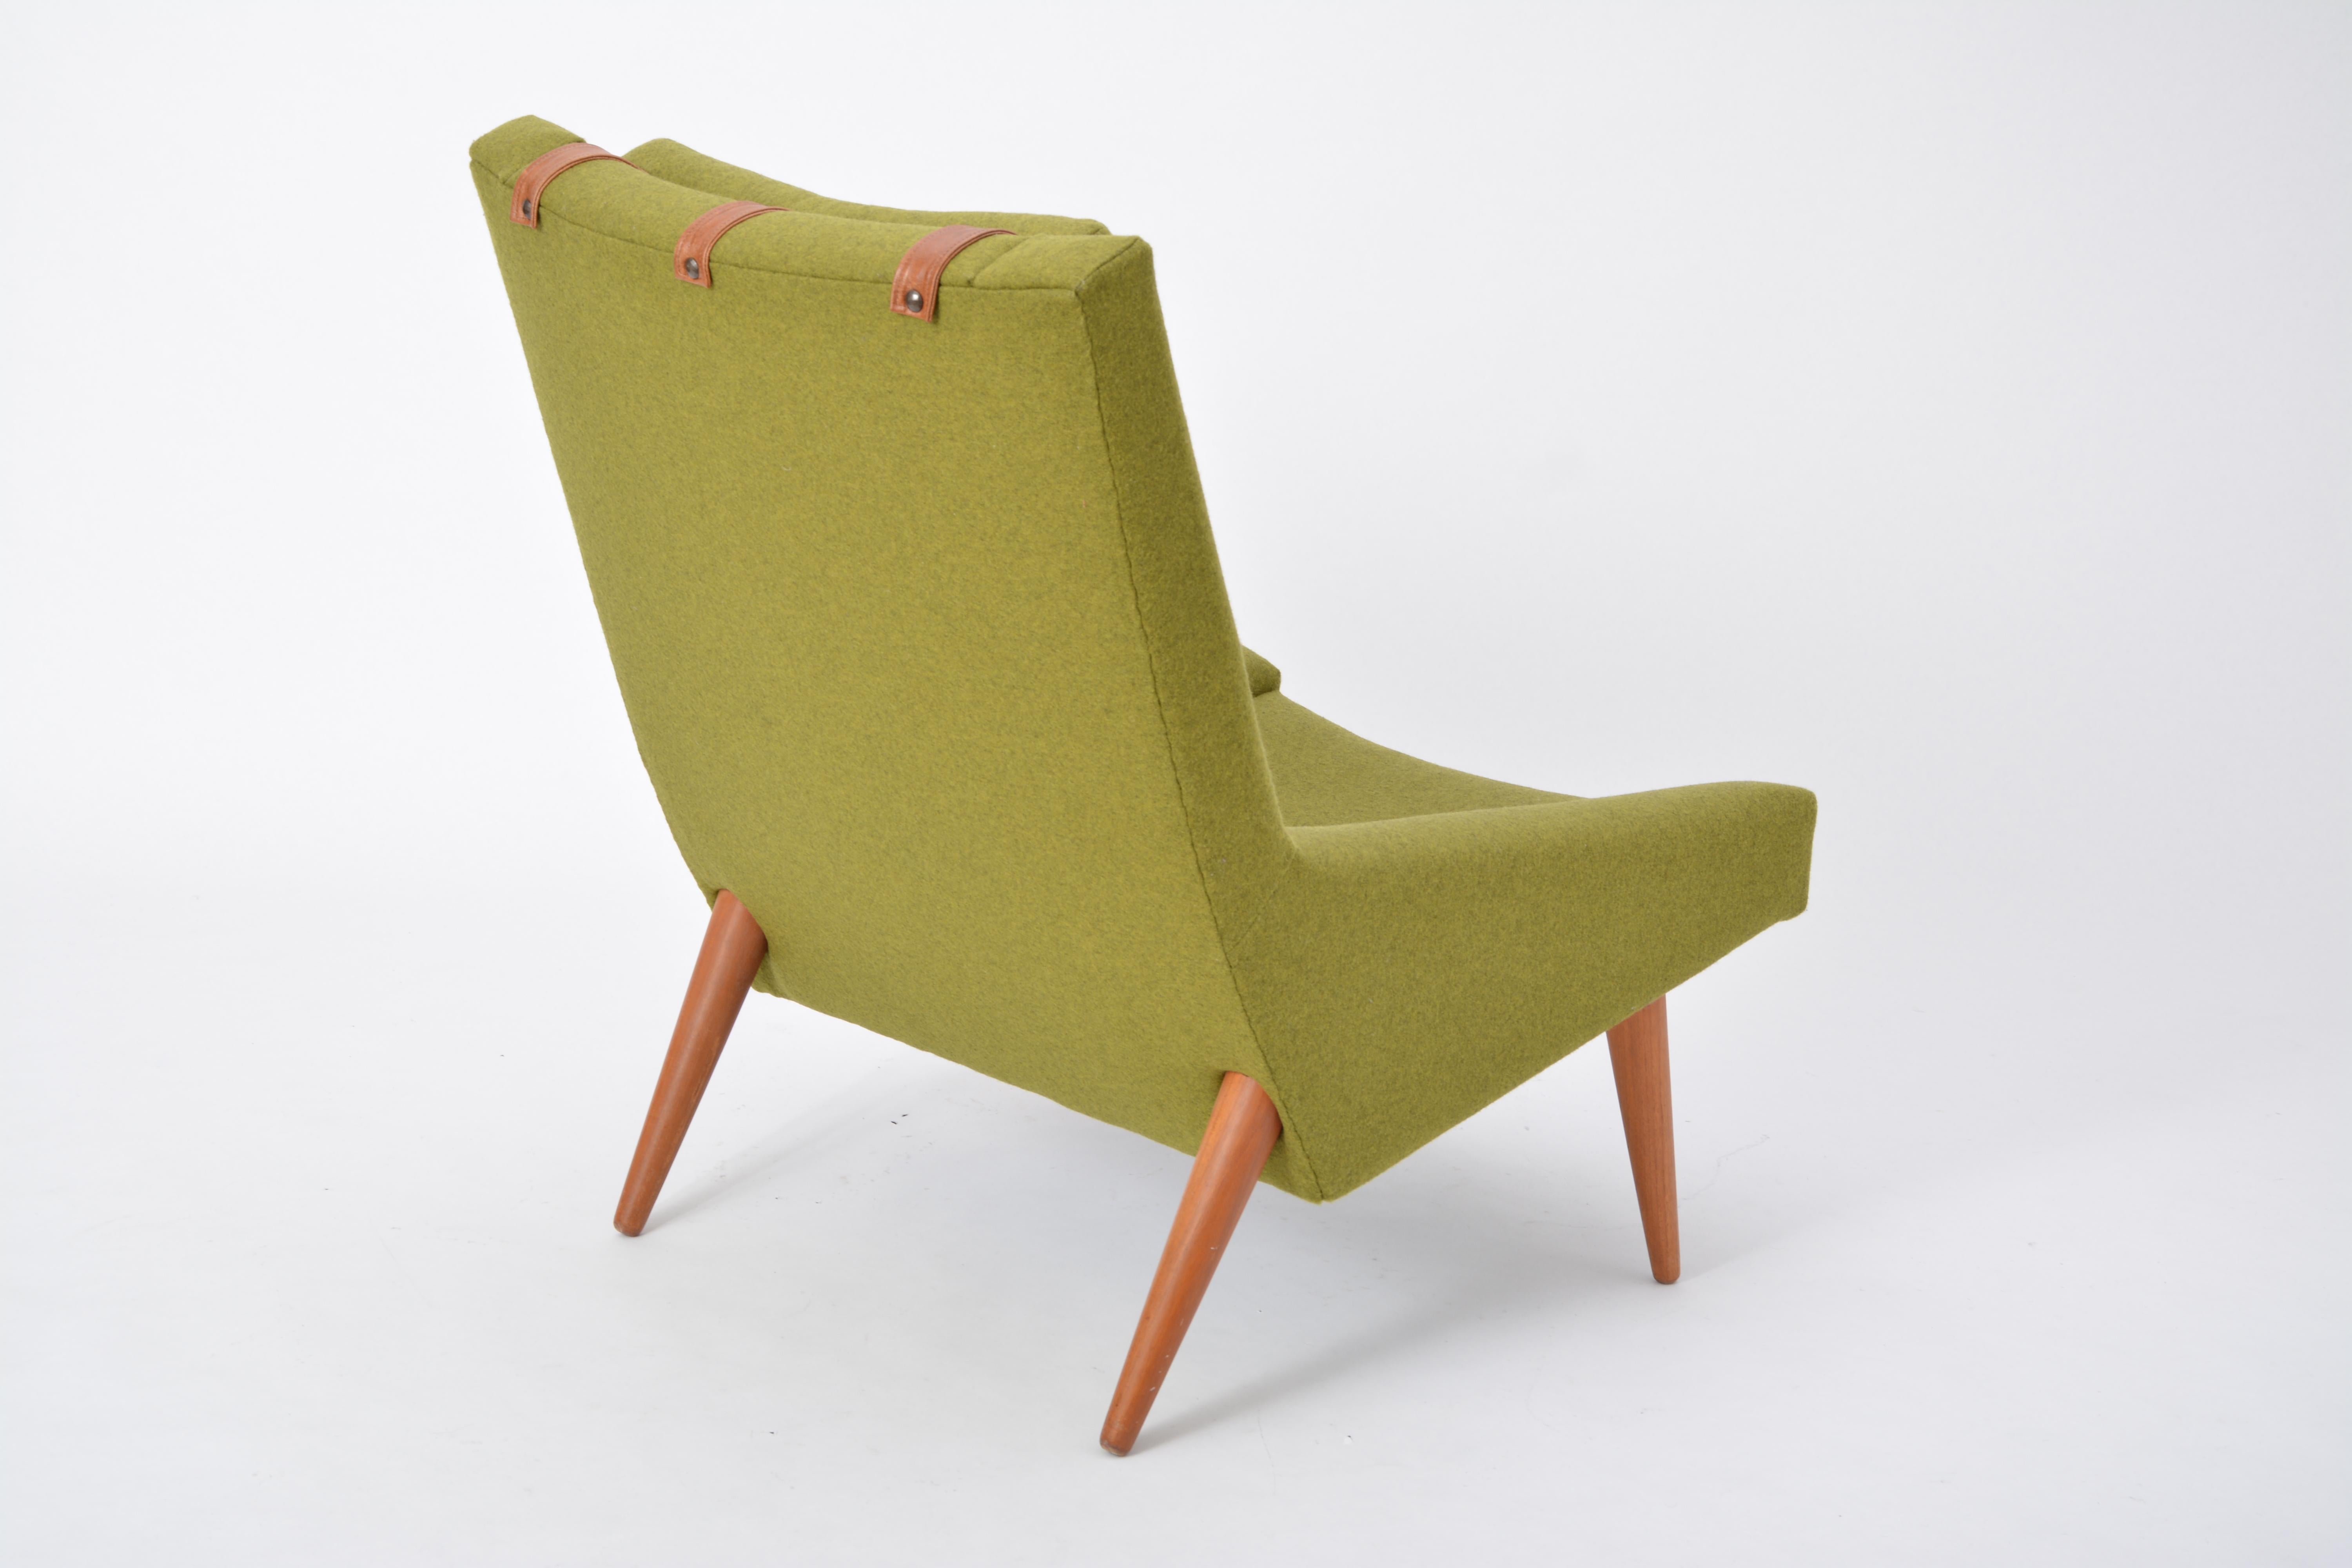 Sessel mit hoher Rückenlehne von Illum Wikkelsø für Soren Willadsen, 1960er Jahre (20. Jahrhundert)